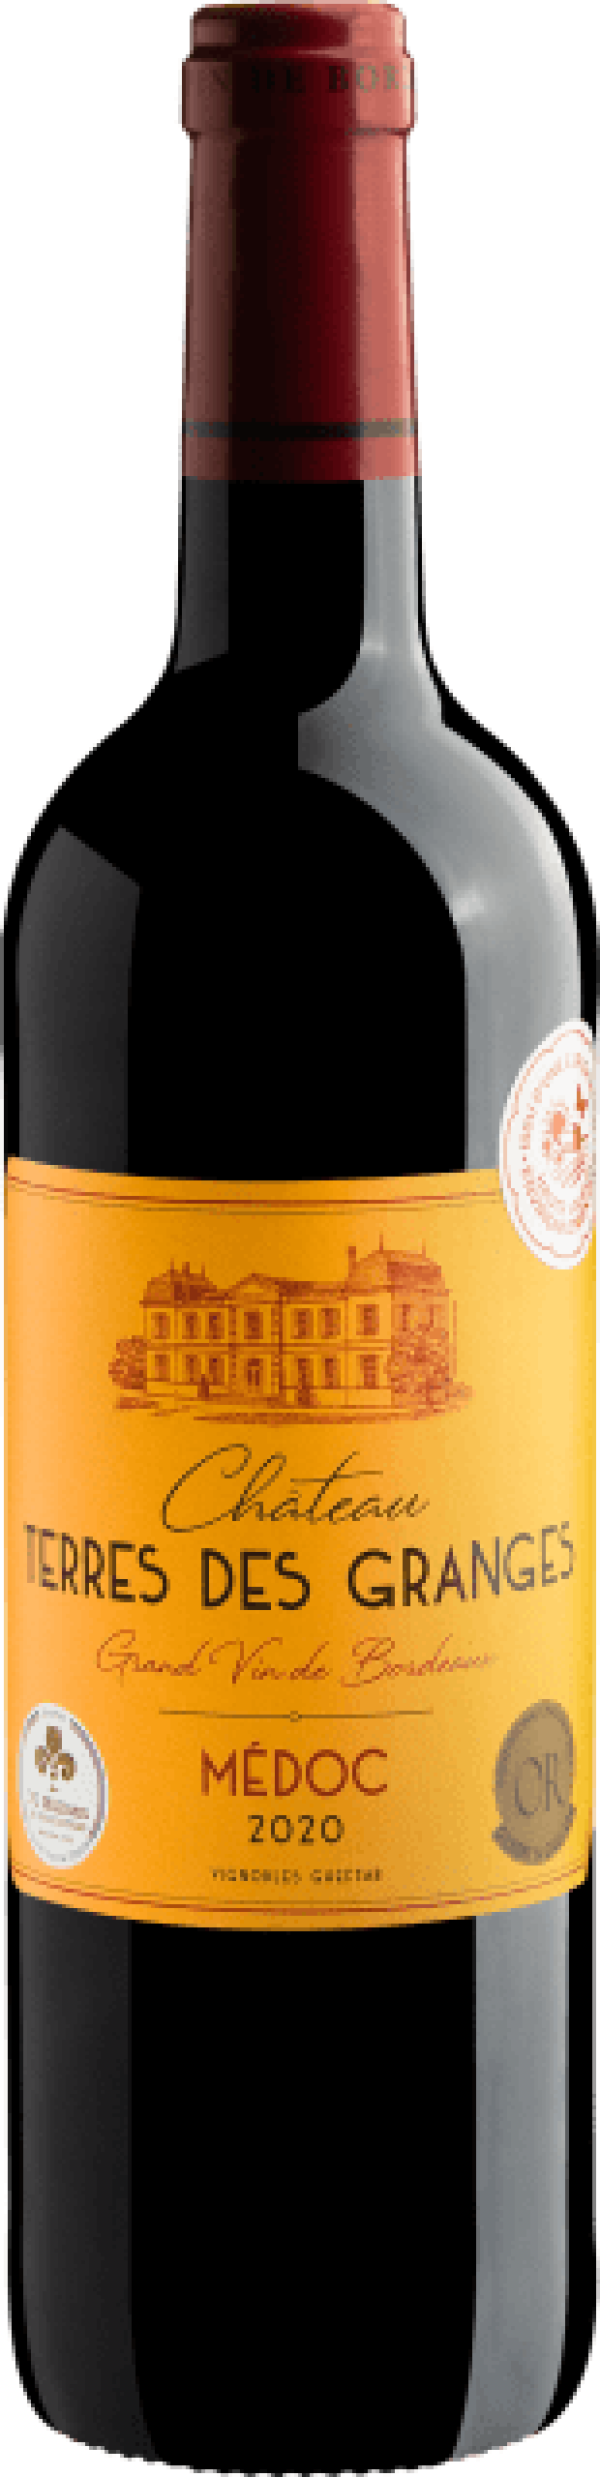 Château Terres des Granges Grand Vin de Bordeaux Médoc 2020